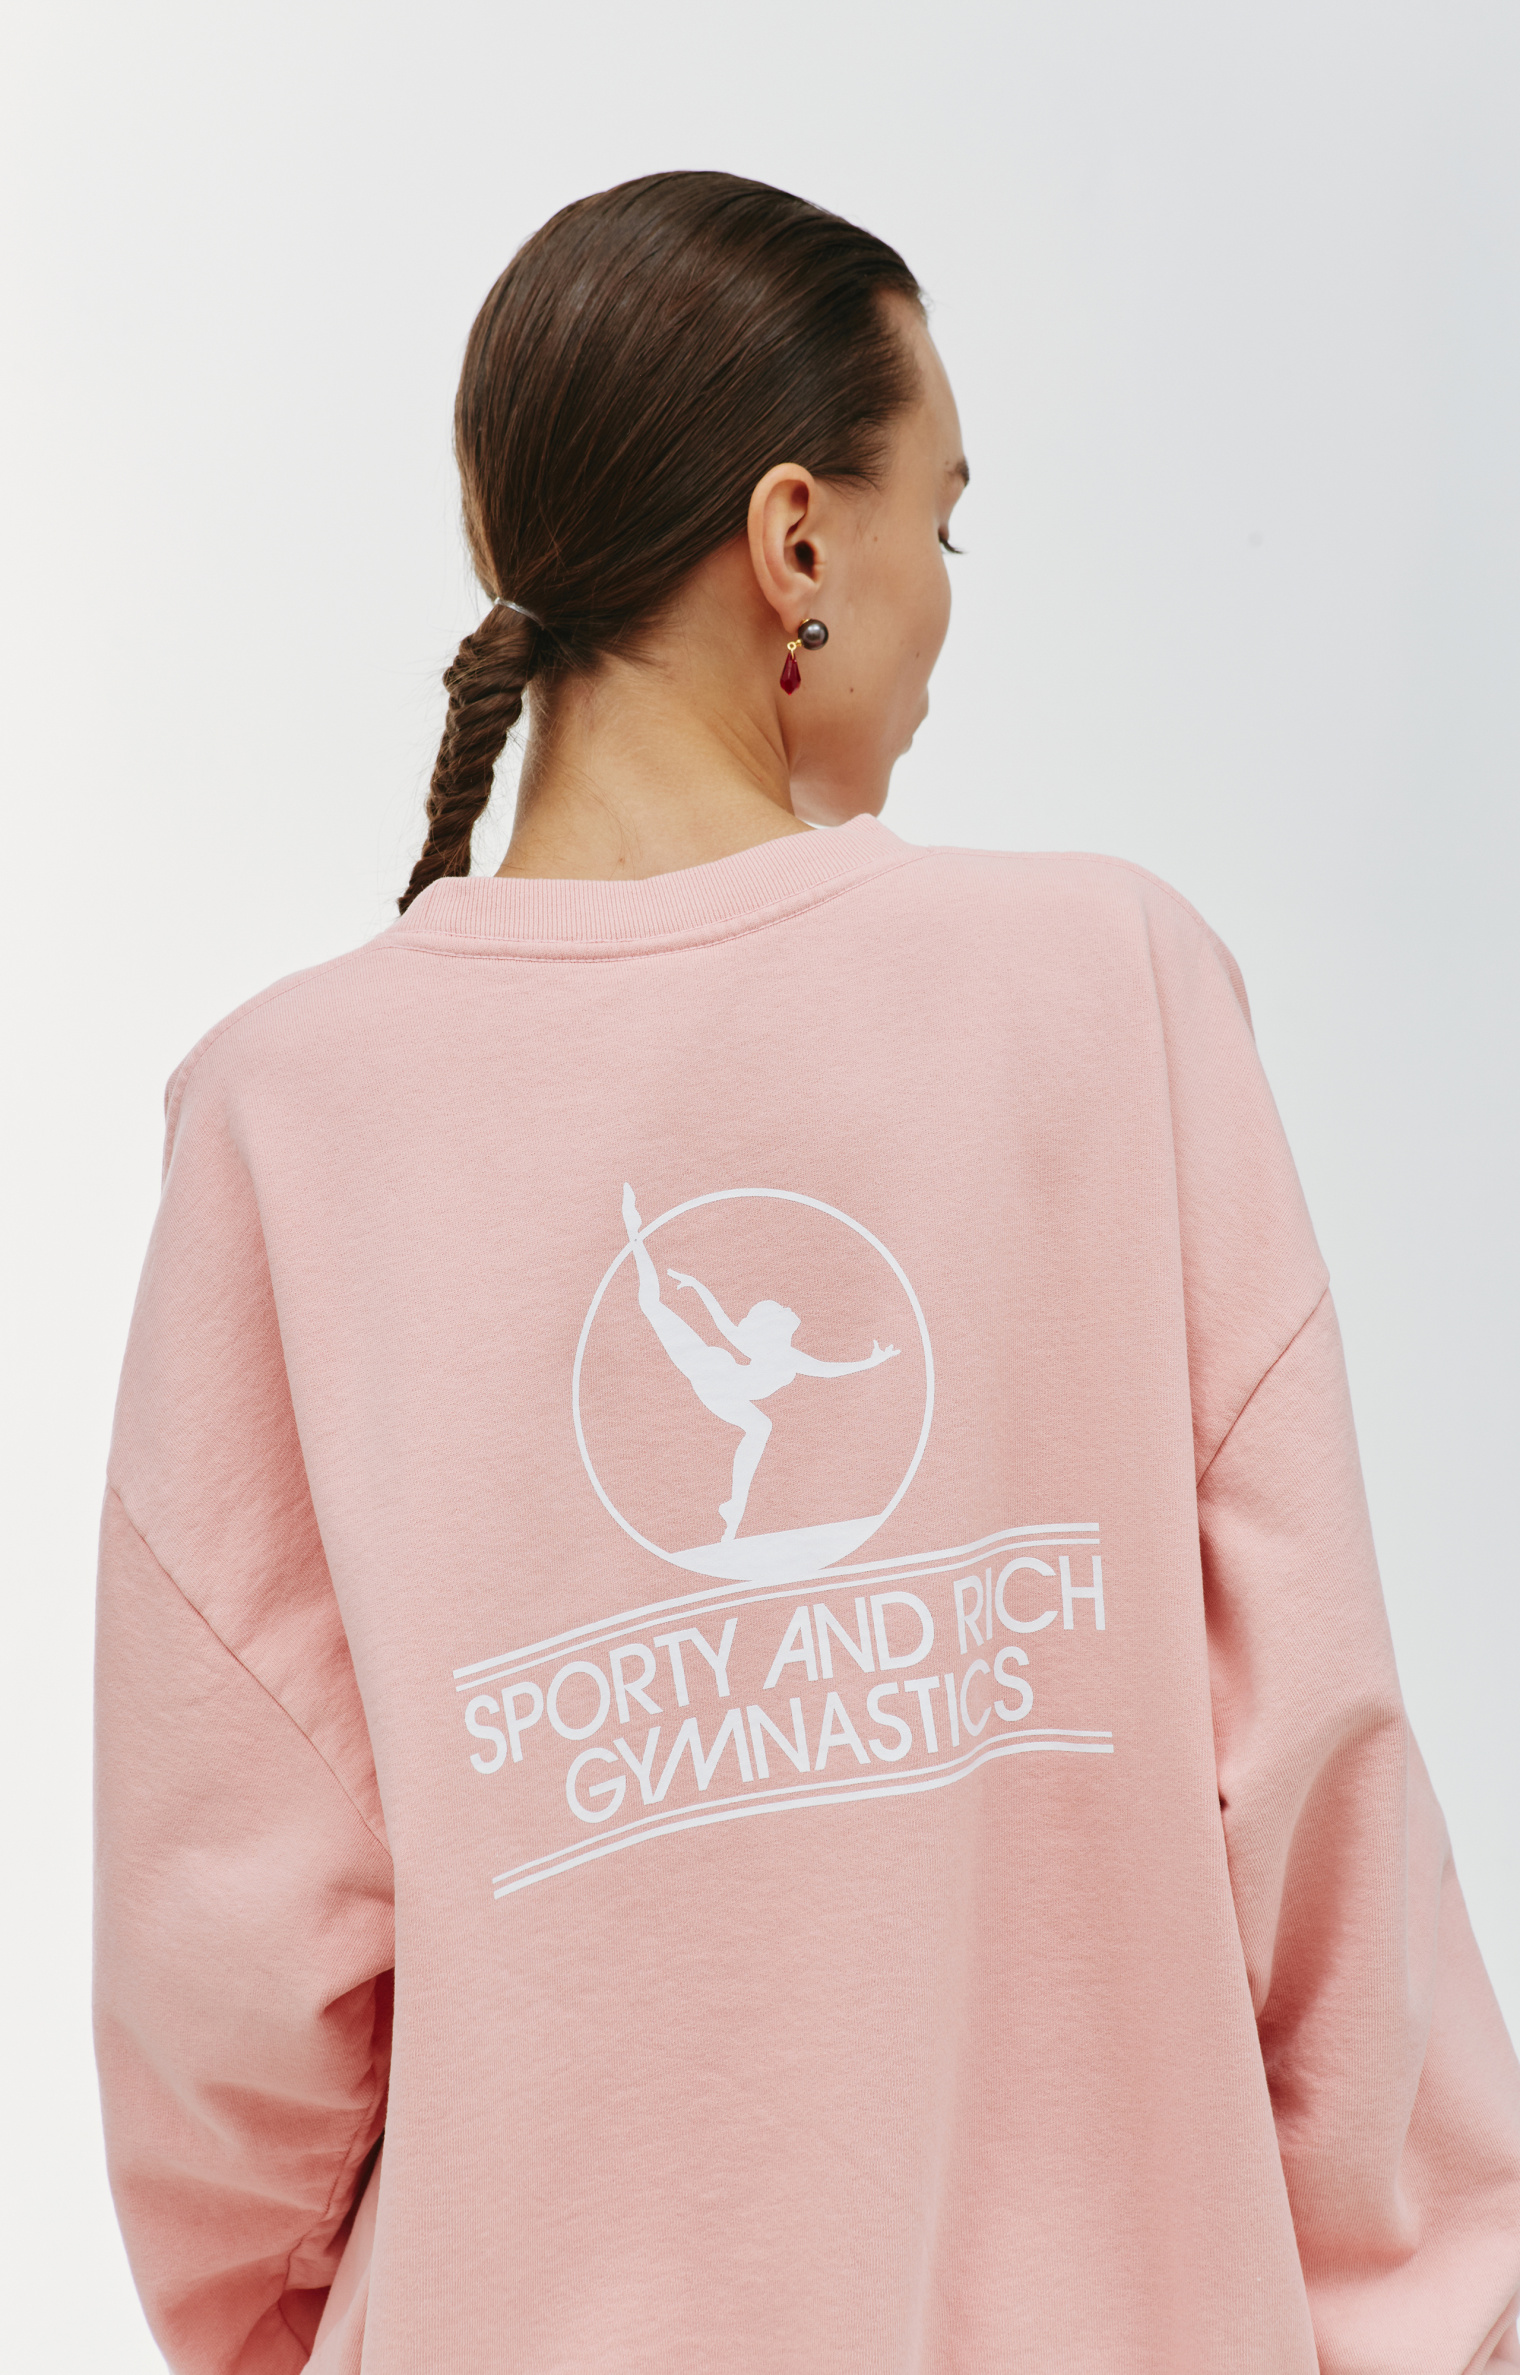 SPORTY & RICH Gymnastics sweatshirt